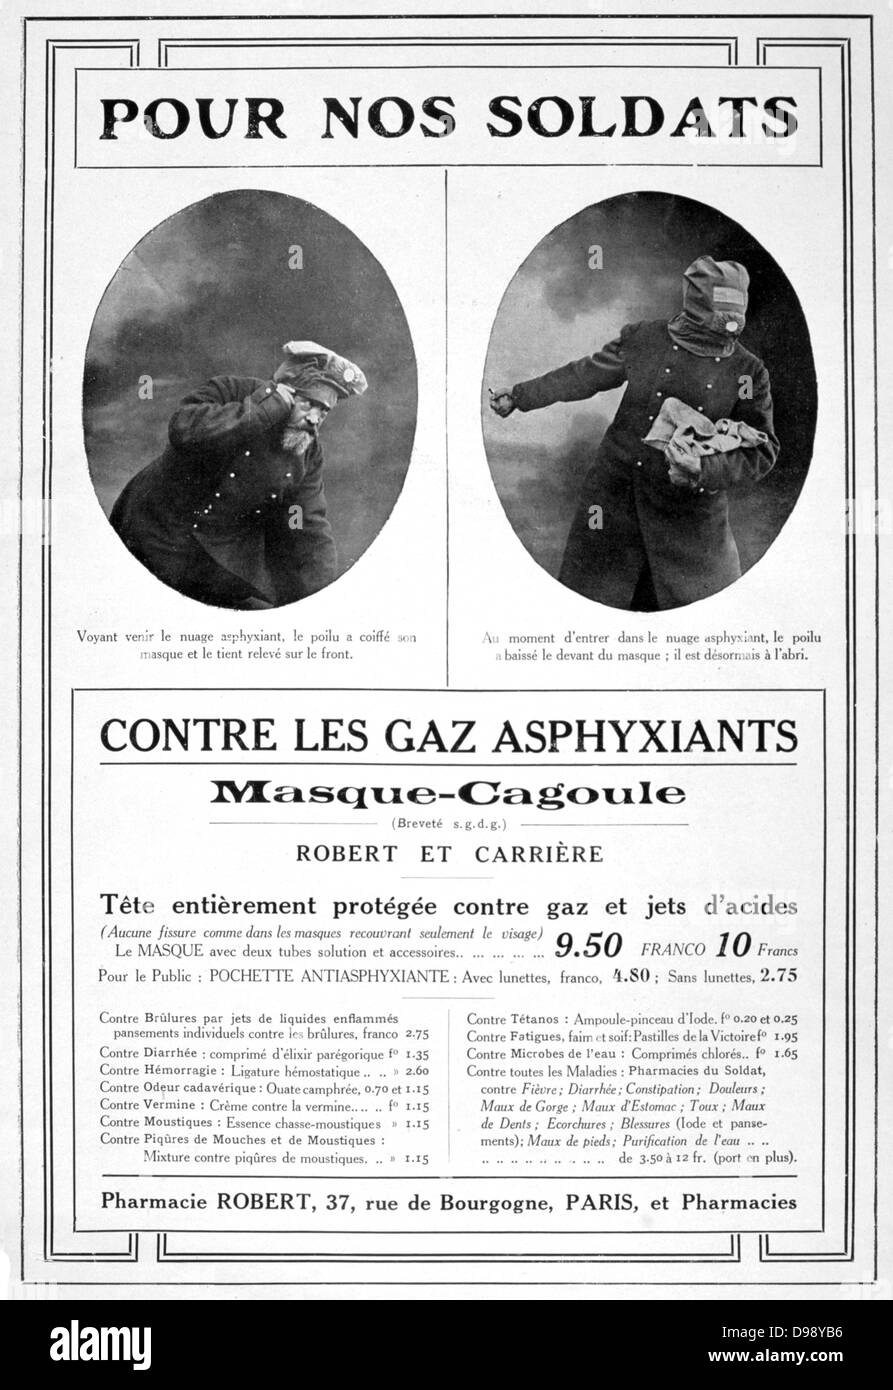 Werbung für Gasmasken. Von der französischen Zeitschrift "Le Flambeau", 18. September 1915. Chemische Kriegsführung Ersten Weltkrieg 1914-1918. Stockfoto